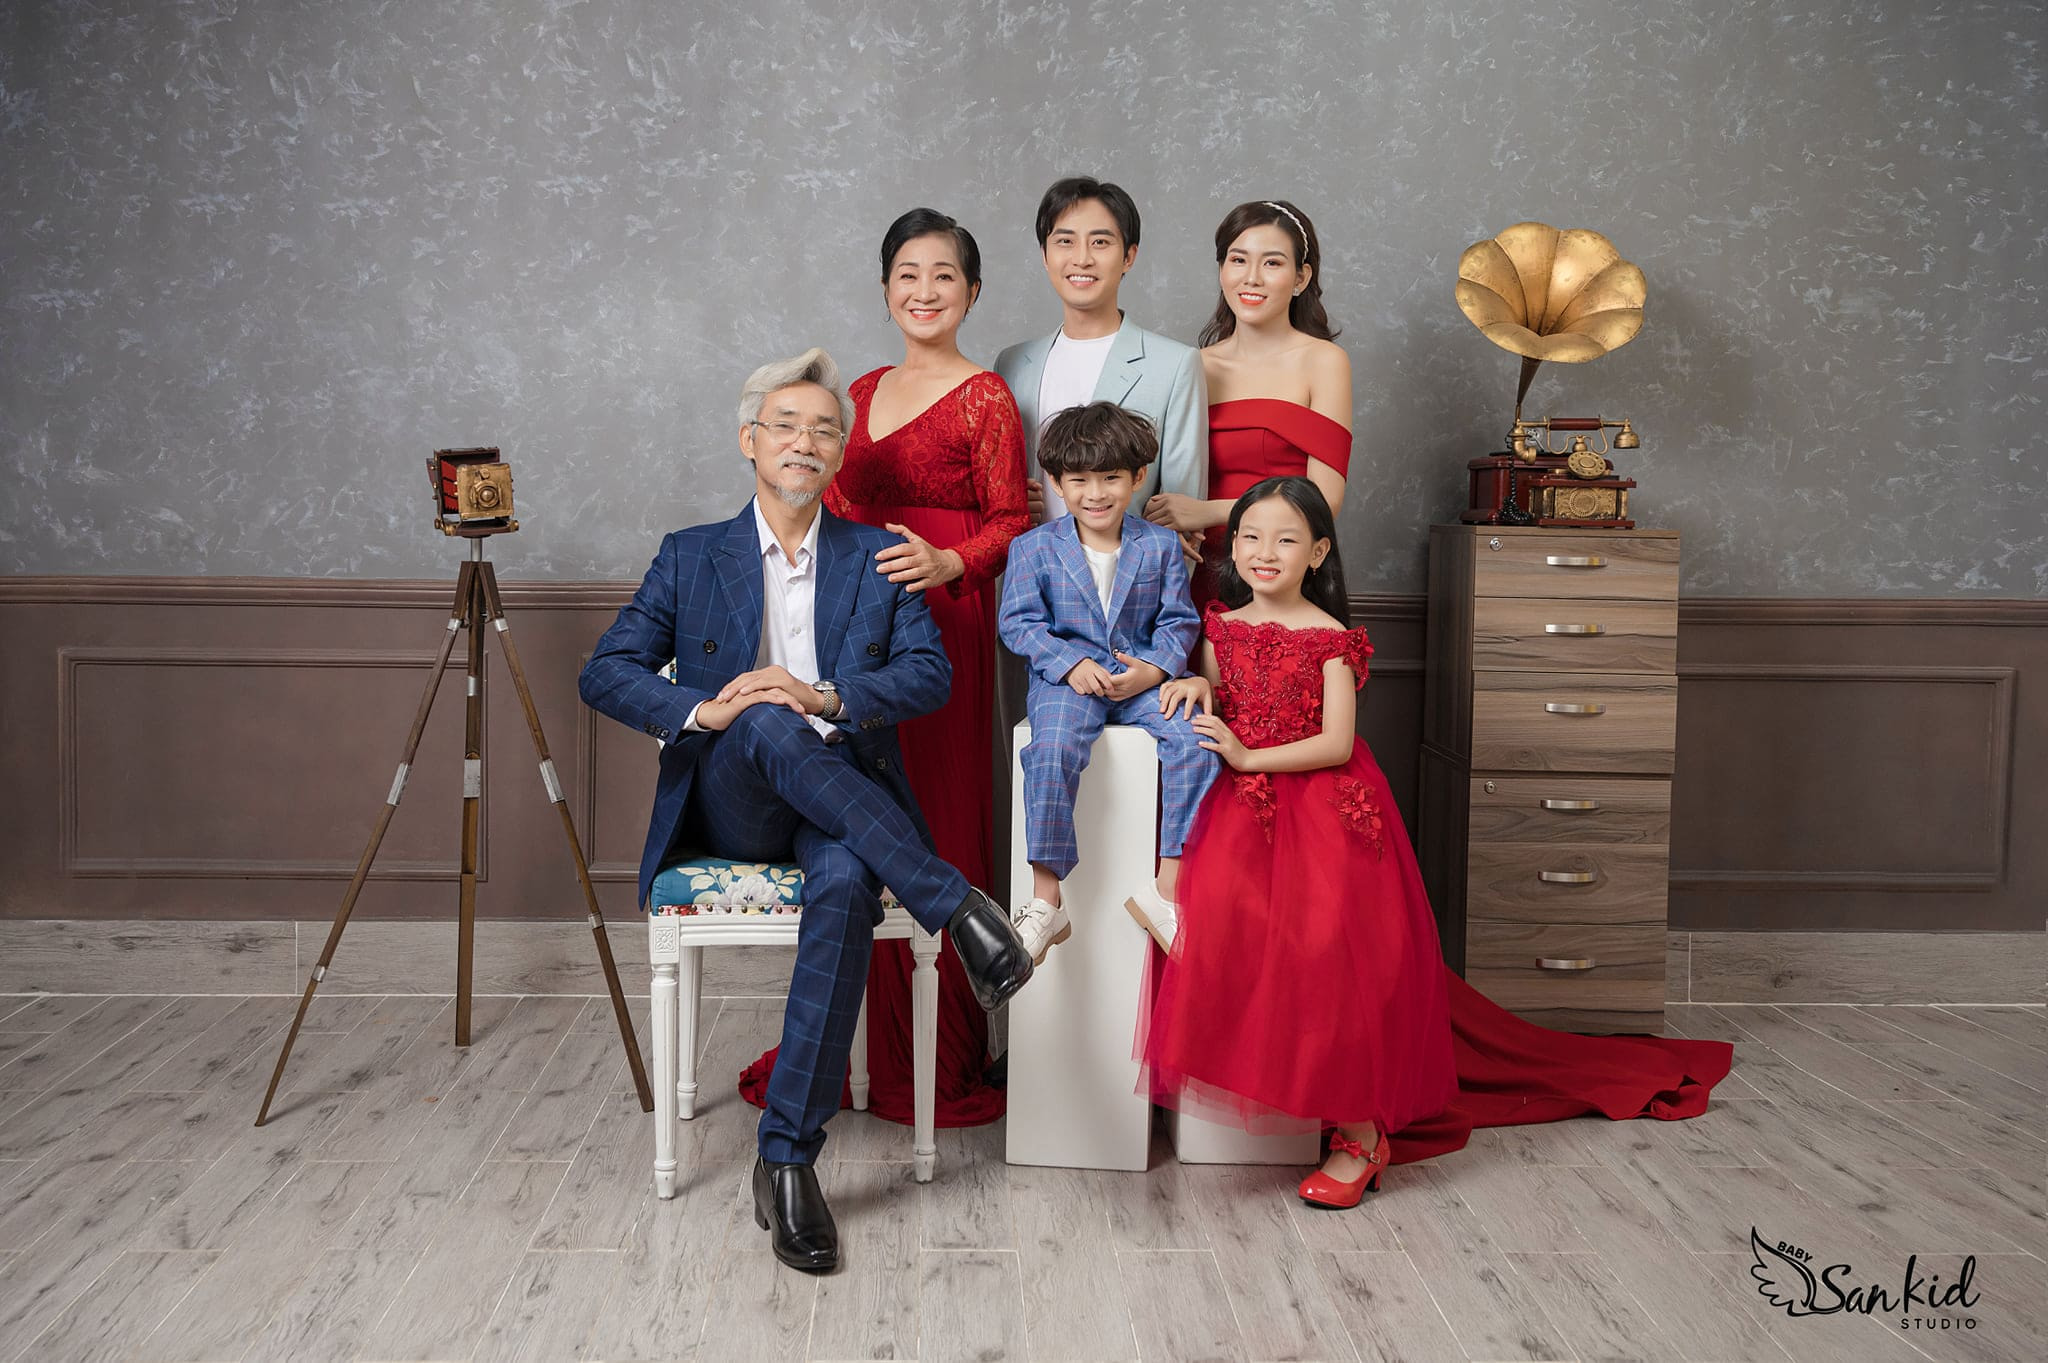 Chụp hình gia đình đẹp tại Sankid Studio